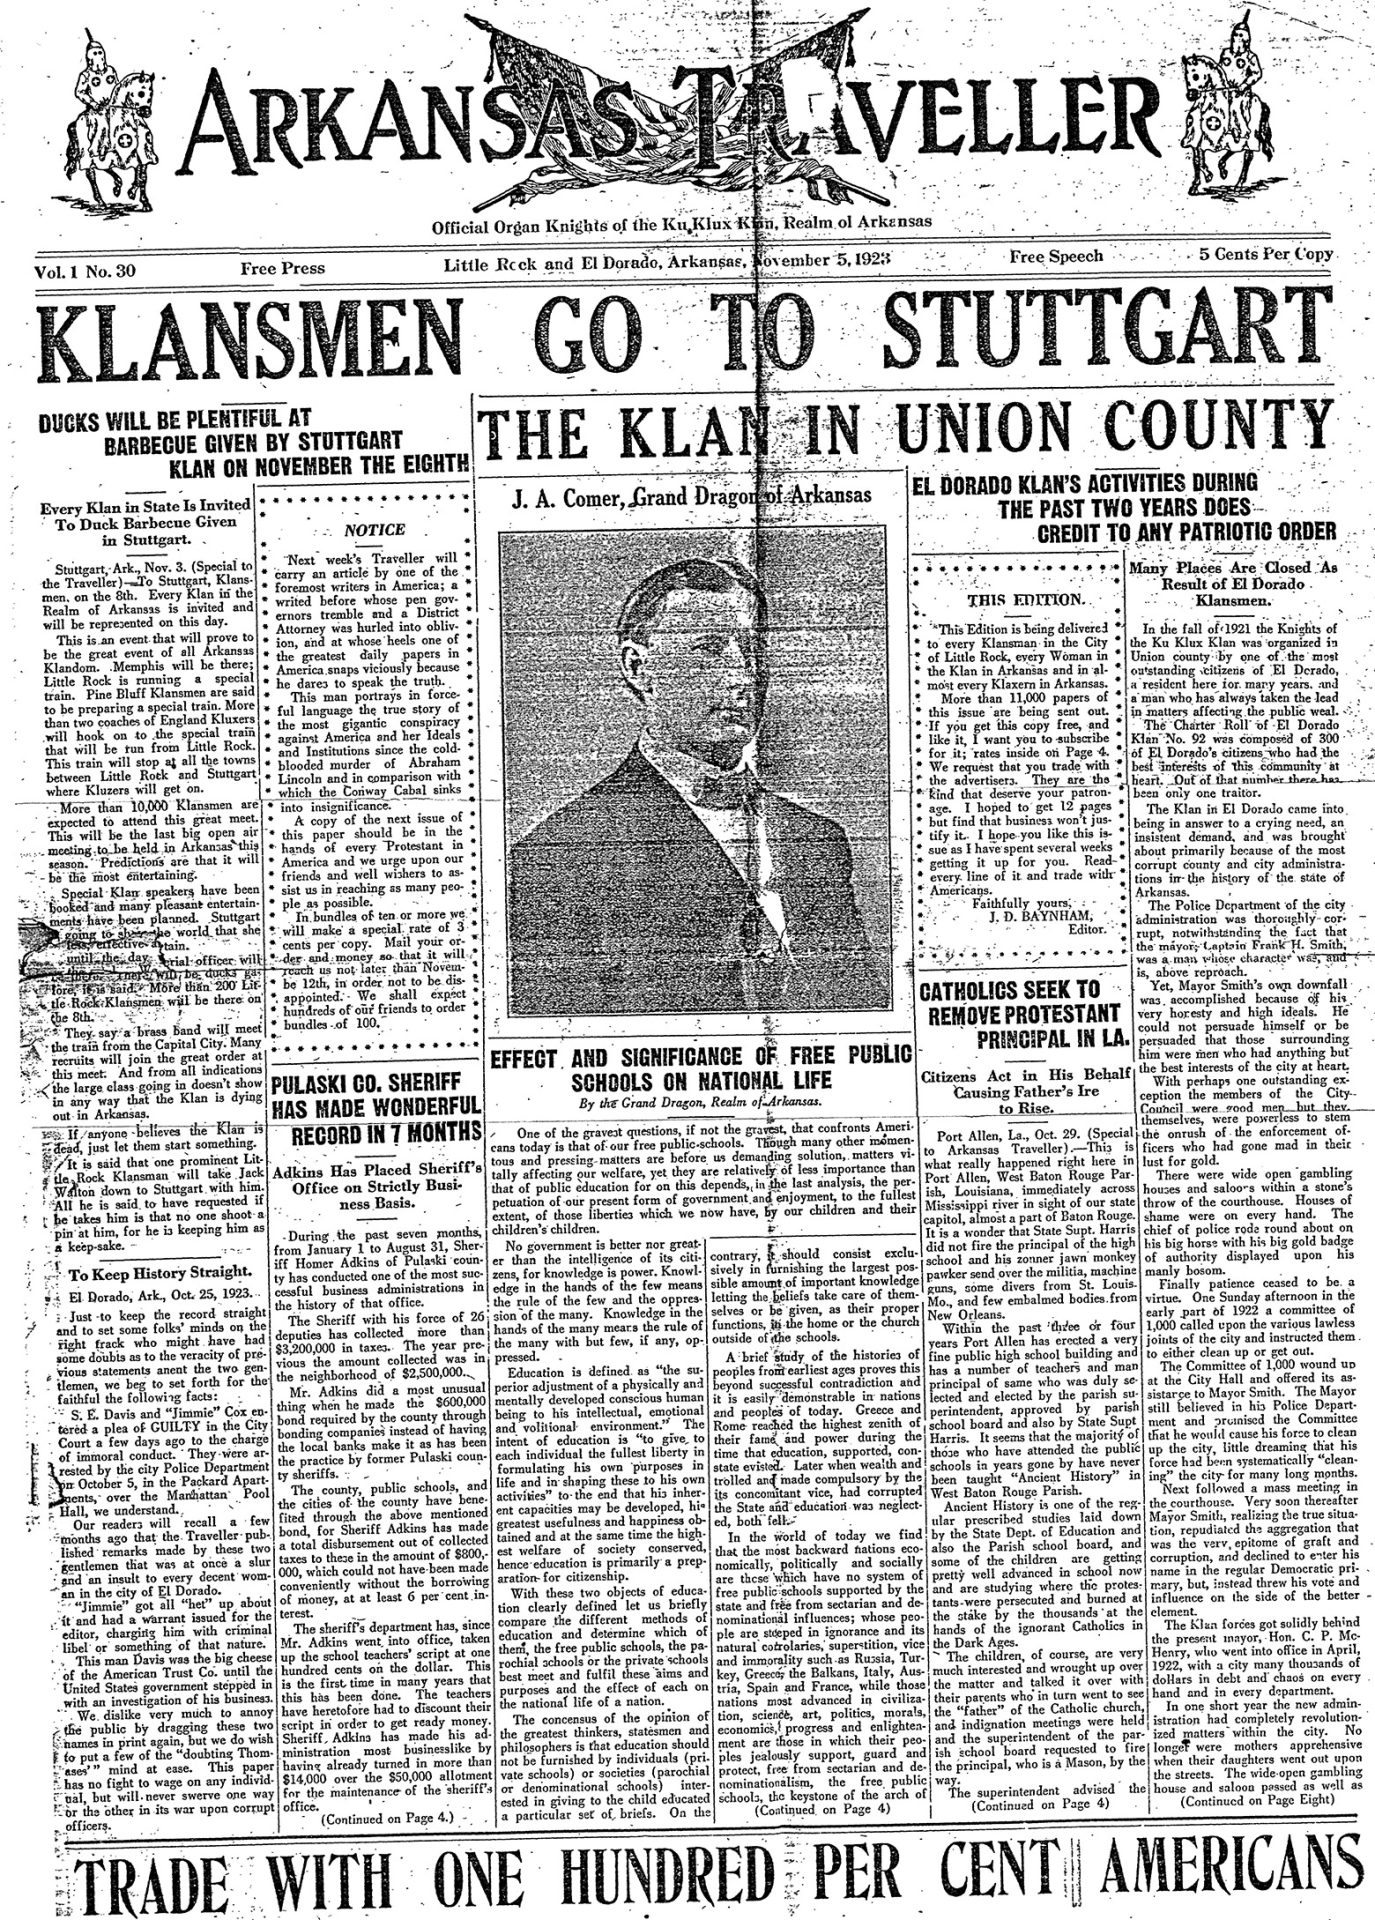 "Klansmen go to Stuttgart" newspaper clipping